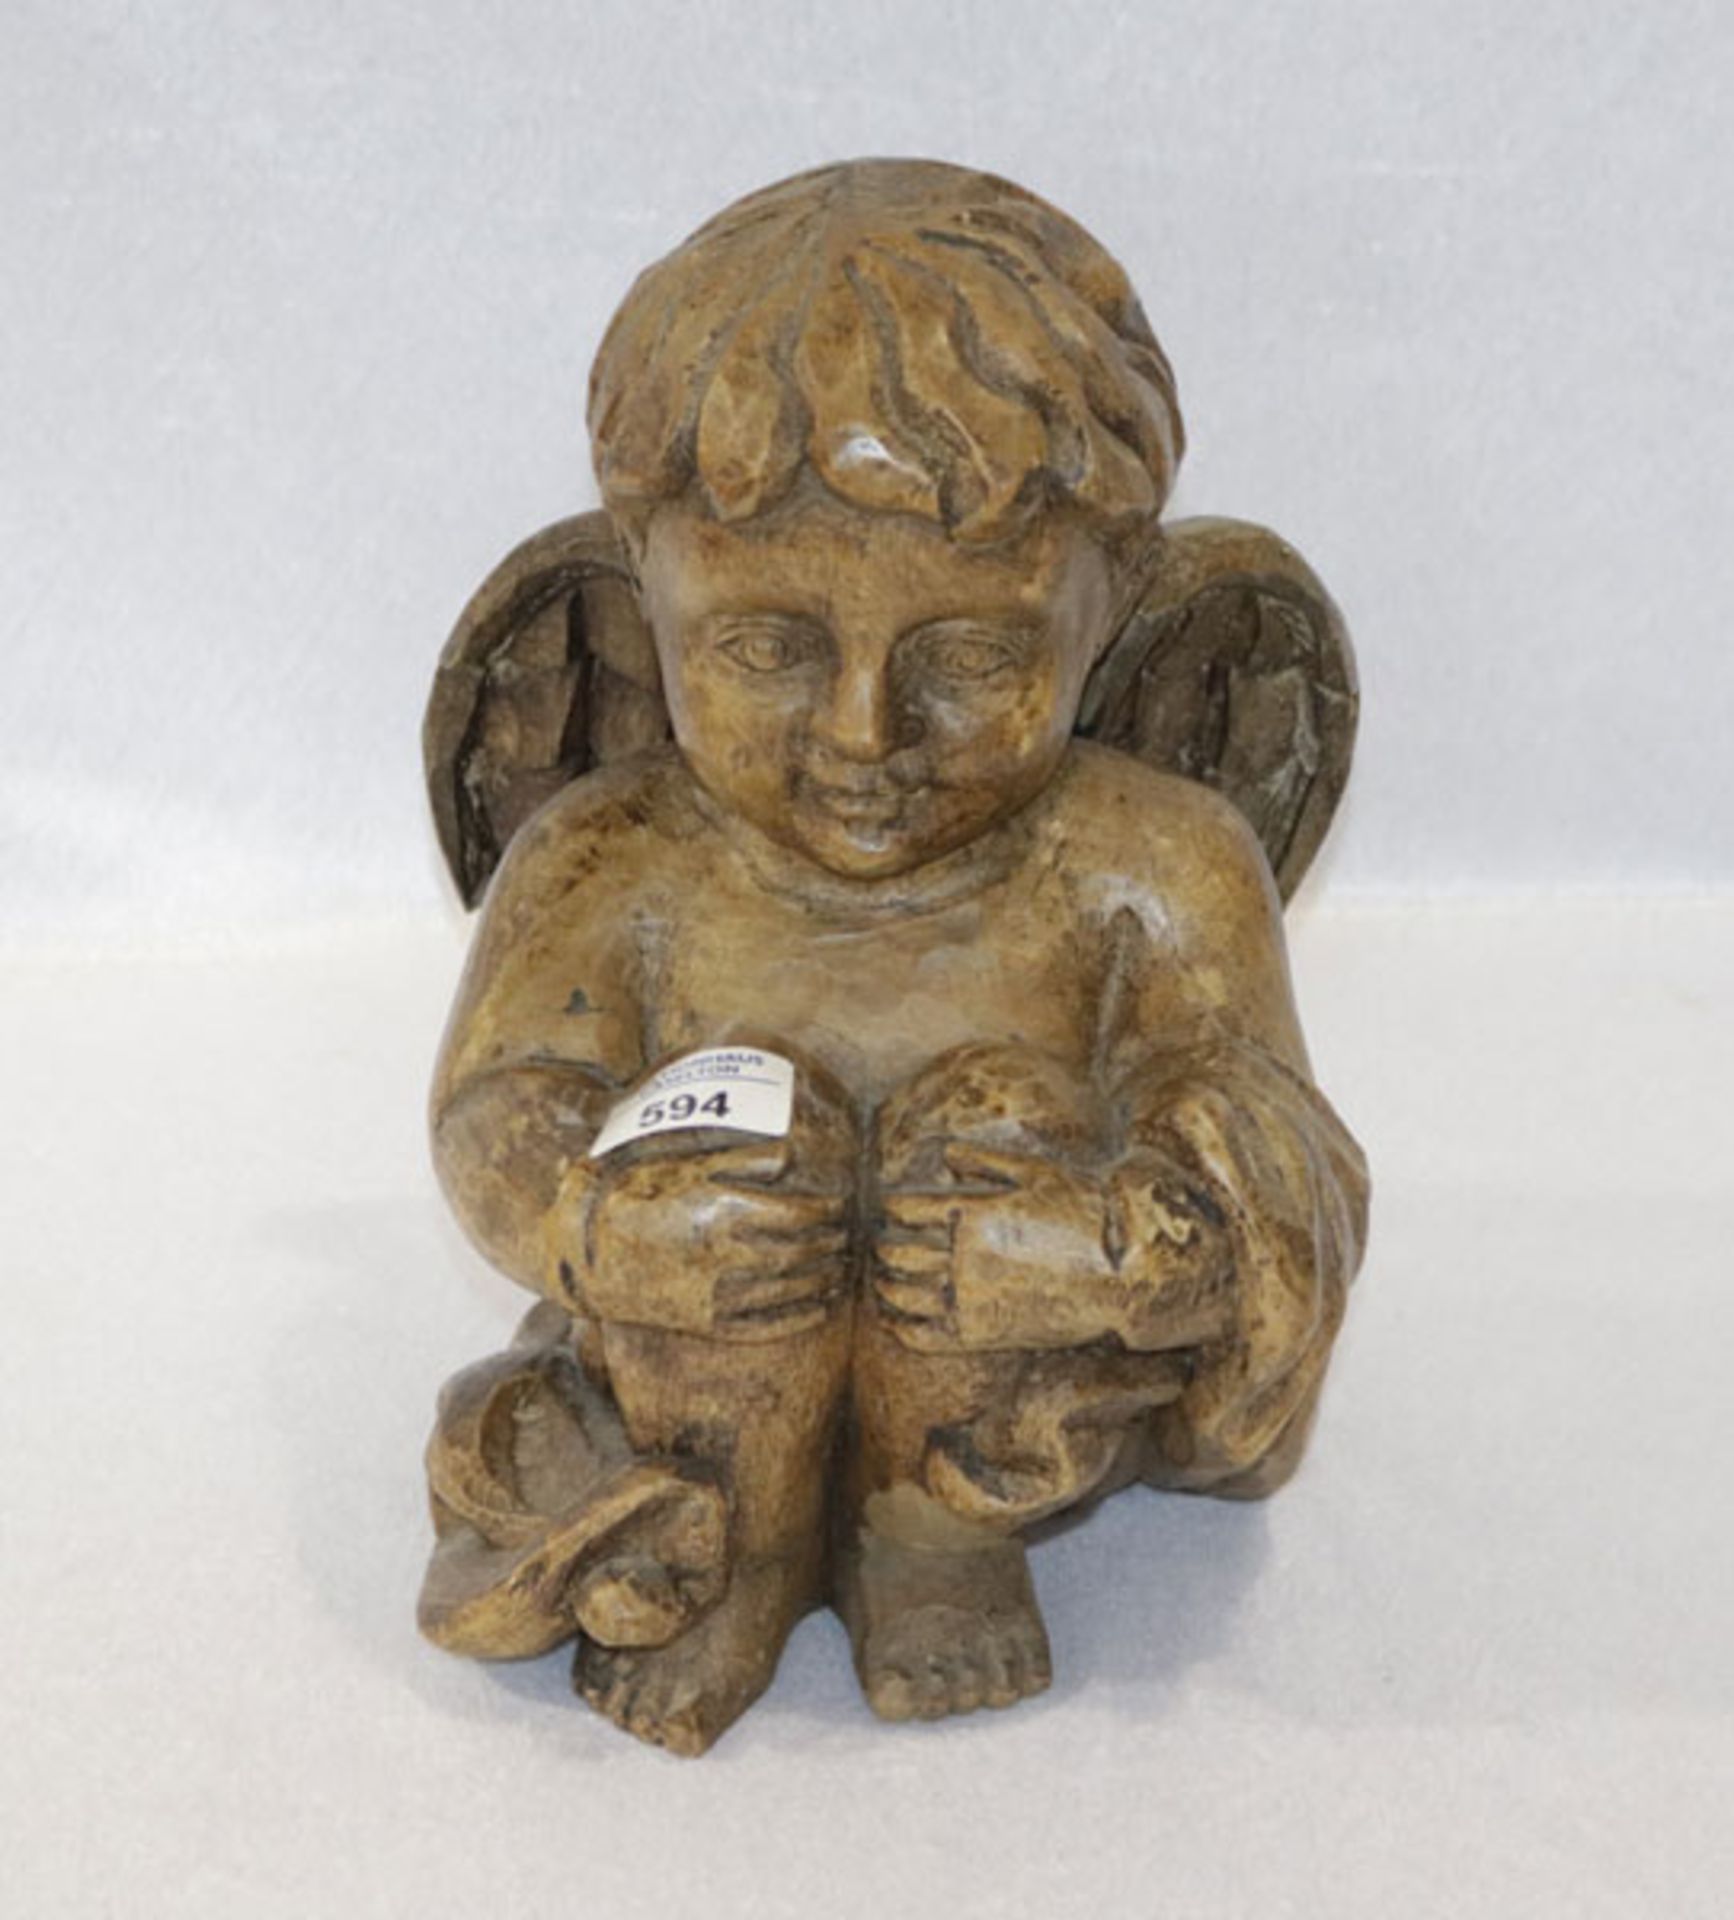 Holz Skulptur 'Sitzender Engel', dunkel gebeizt, 19. Jahrhundert, H 27 cm, B 19 cm, T 20 cm, ein